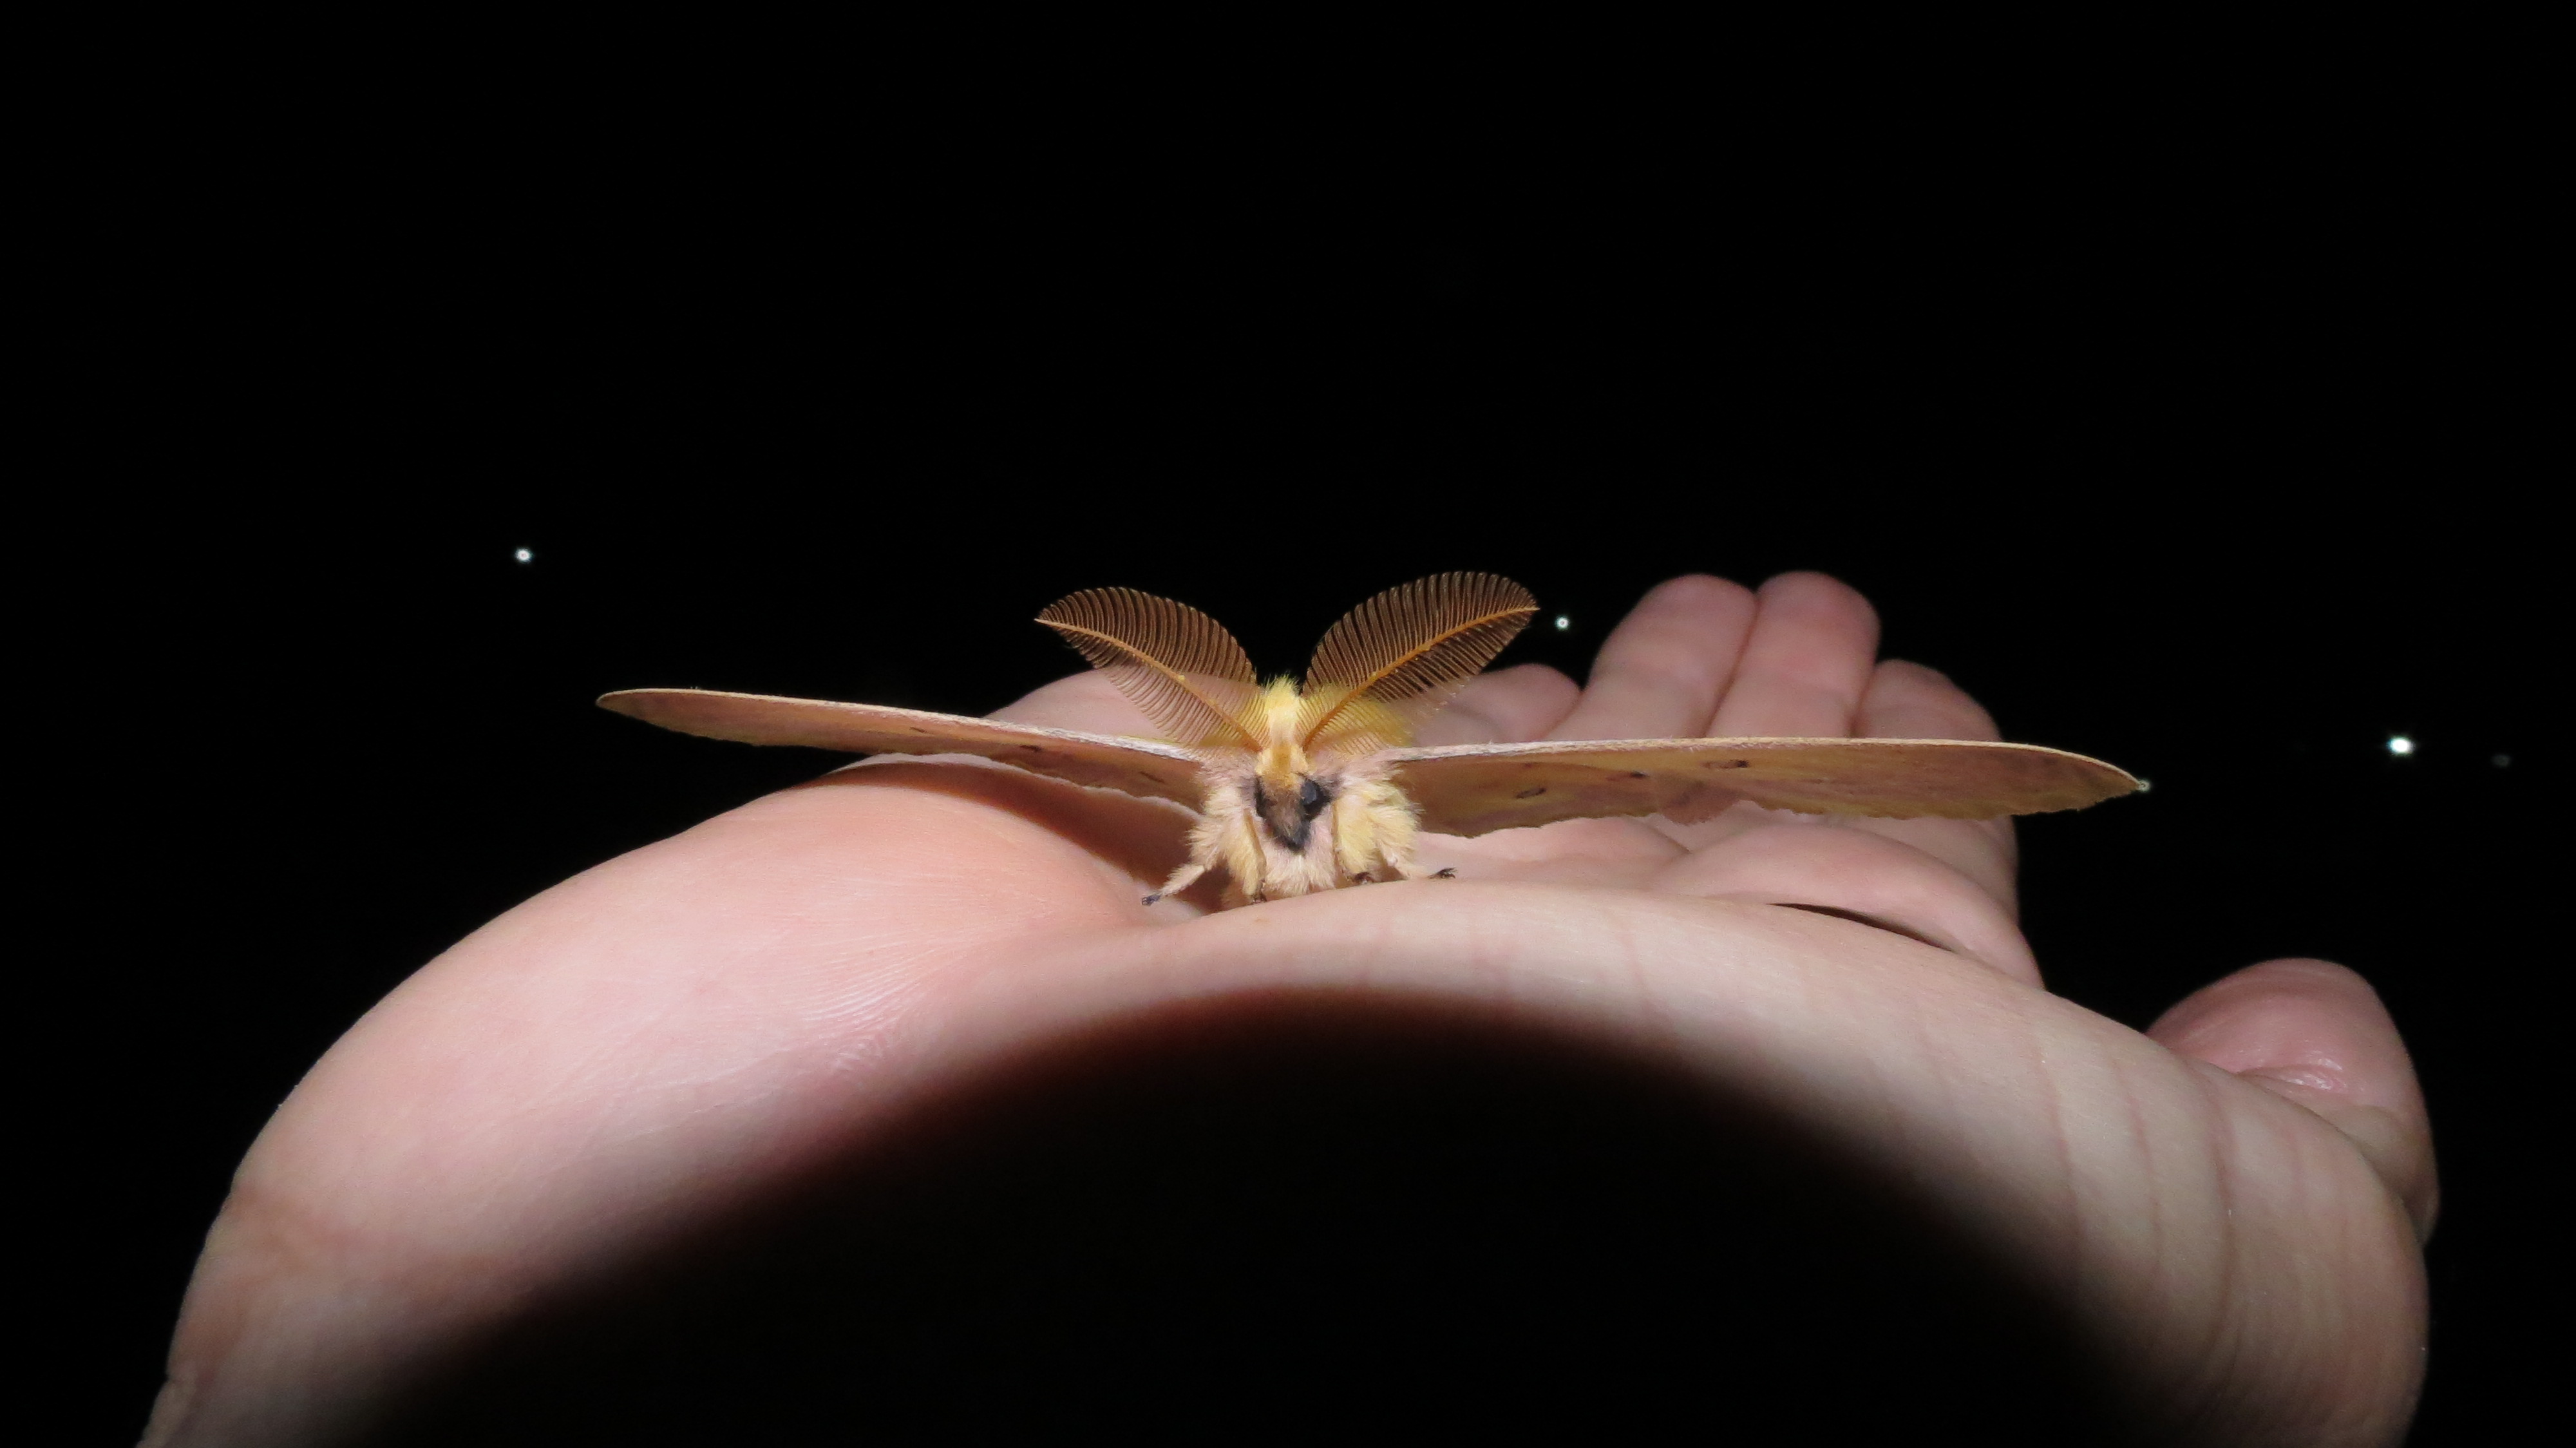 Εικόνα 7. Ο πιο ξεχωριστός μας επισκέπτης, του είδους Pericomena caecigena. Η κοινή του ονομασία στα αγγλικά είναι Autumn Empero moth και το άνοιγμα φτερών του φτάνει τα 9 εκατοστά/ M. Pita